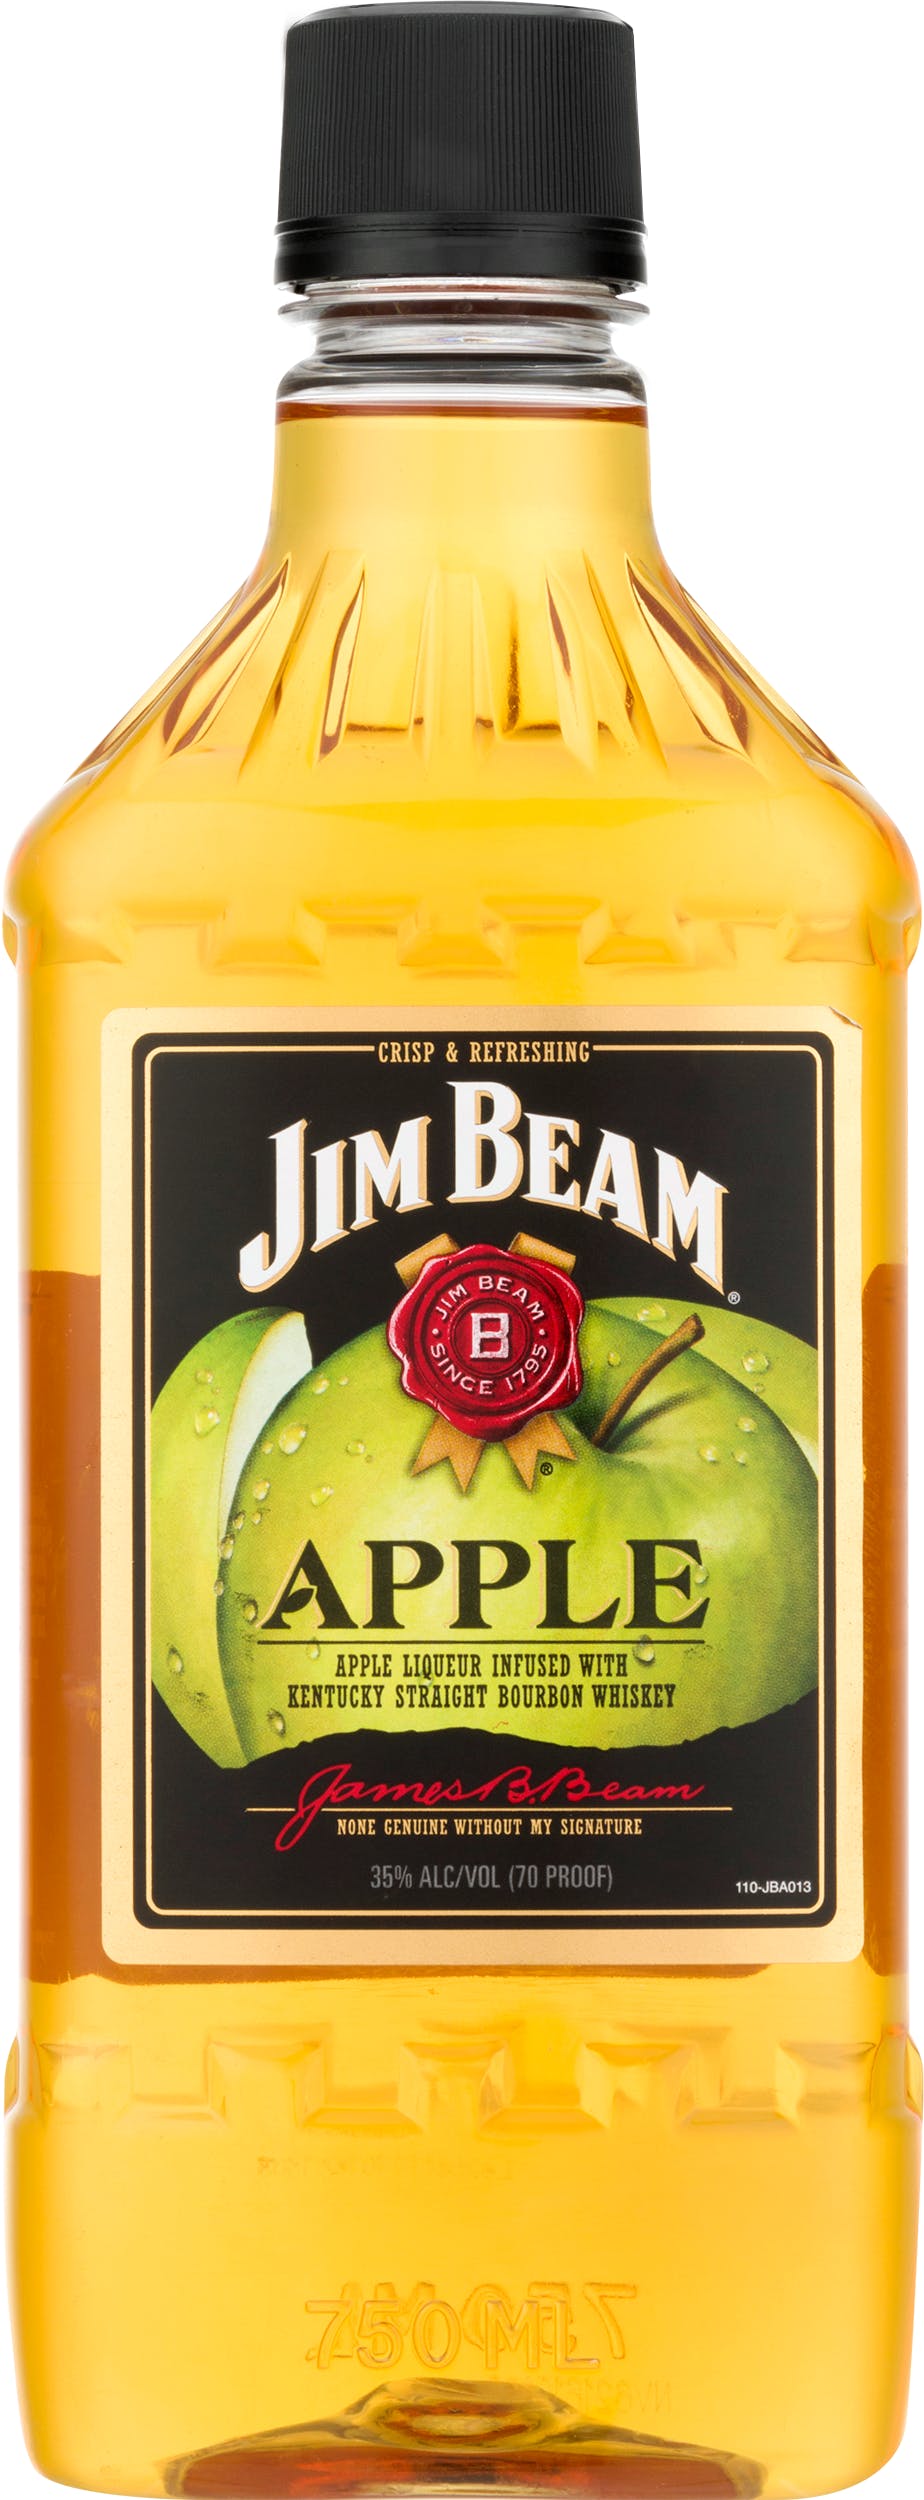 Jim Beam Apple Bourbon 750ml PET Bottle - Nick & Moe's Liquor